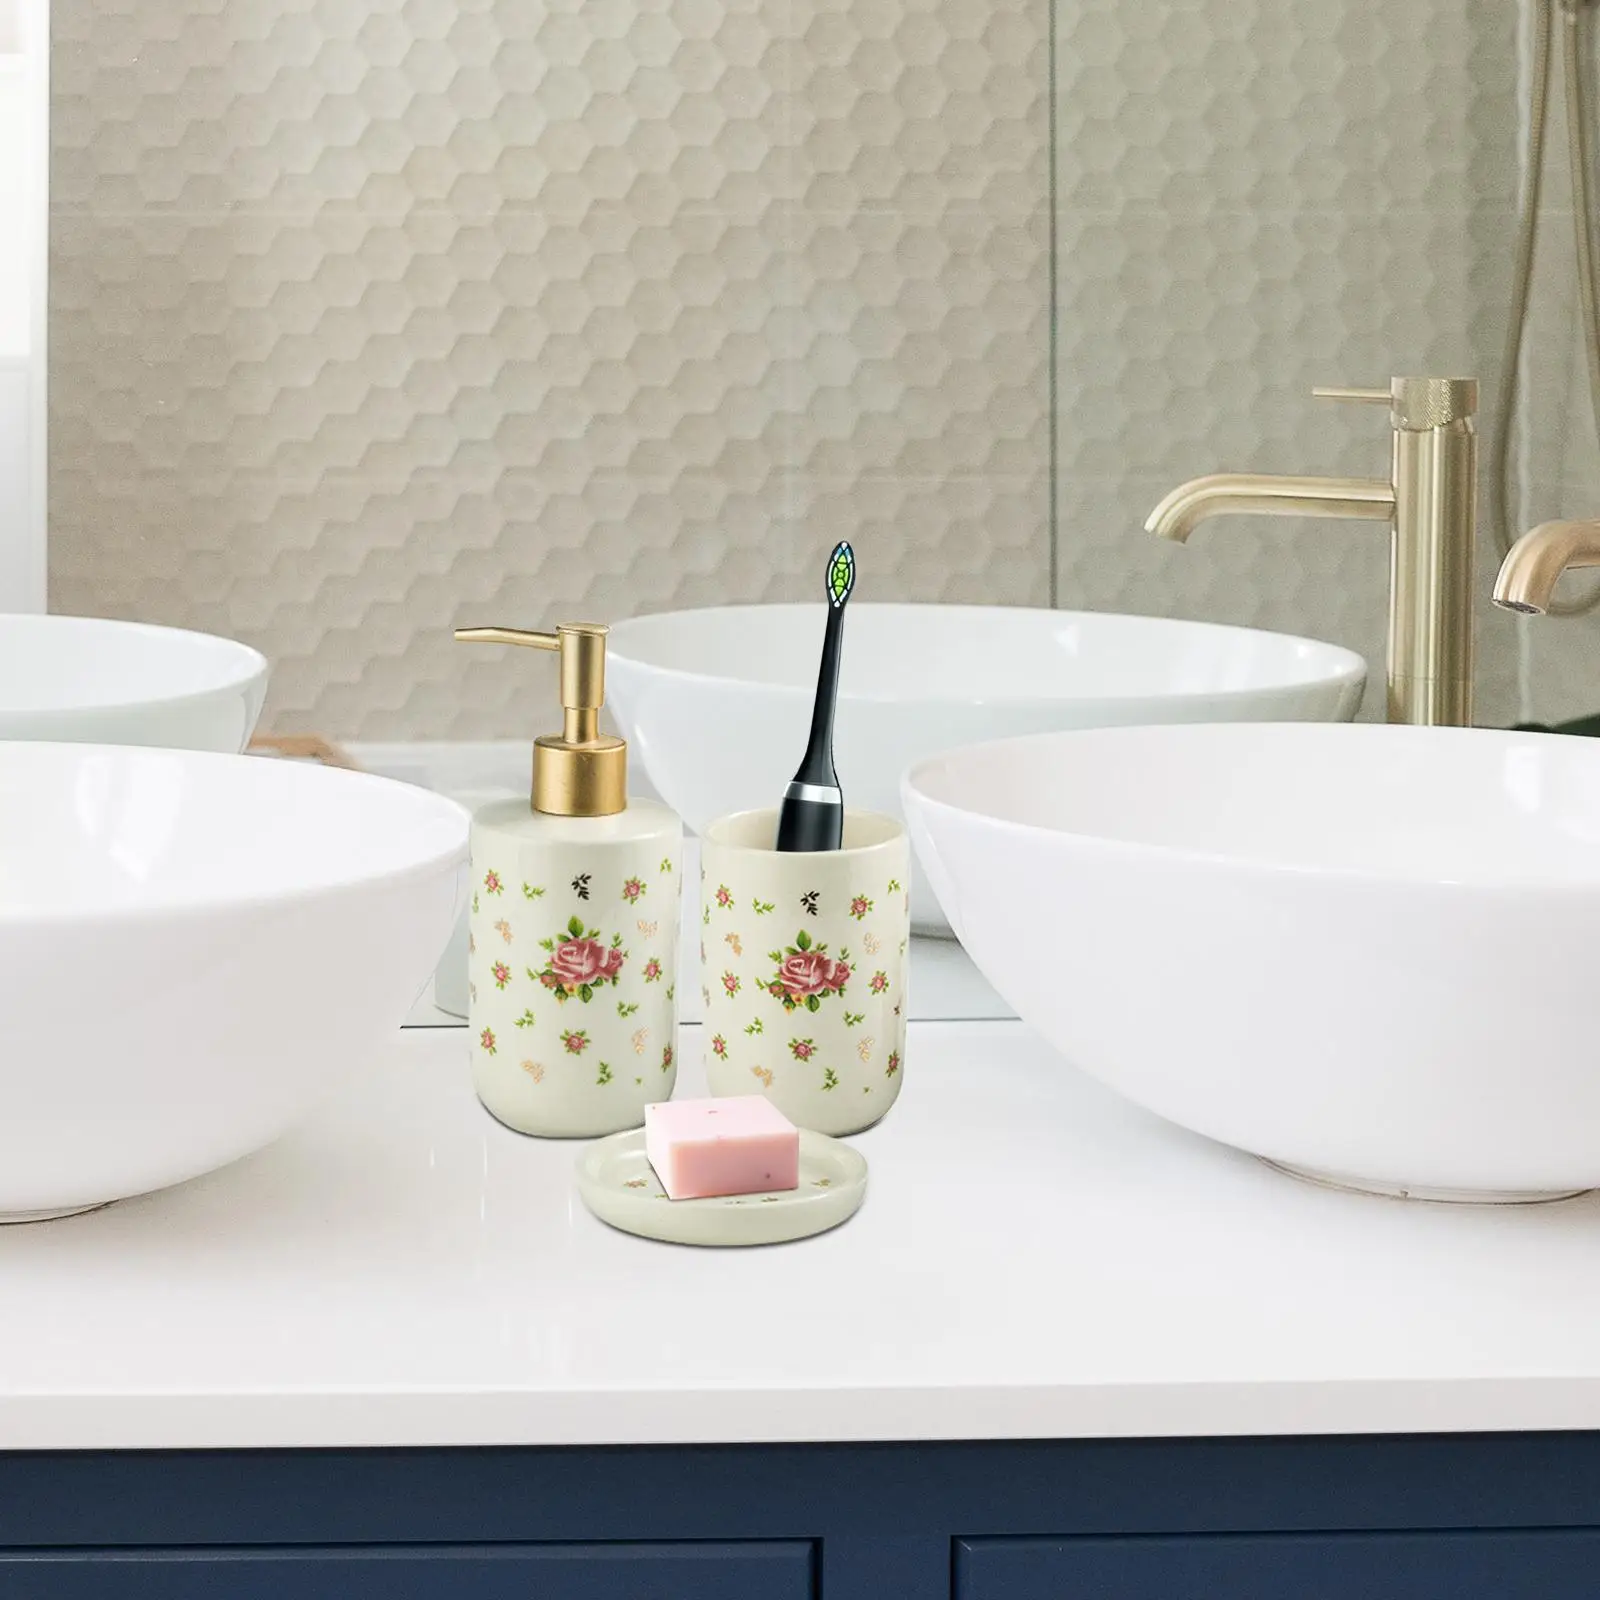 Ceramic Bathroom Accessory Set, Roses Pattern Lotion Dispenser, Bathroom Tumbler, Exquisite Craftsmanship Soap Dish Decorations